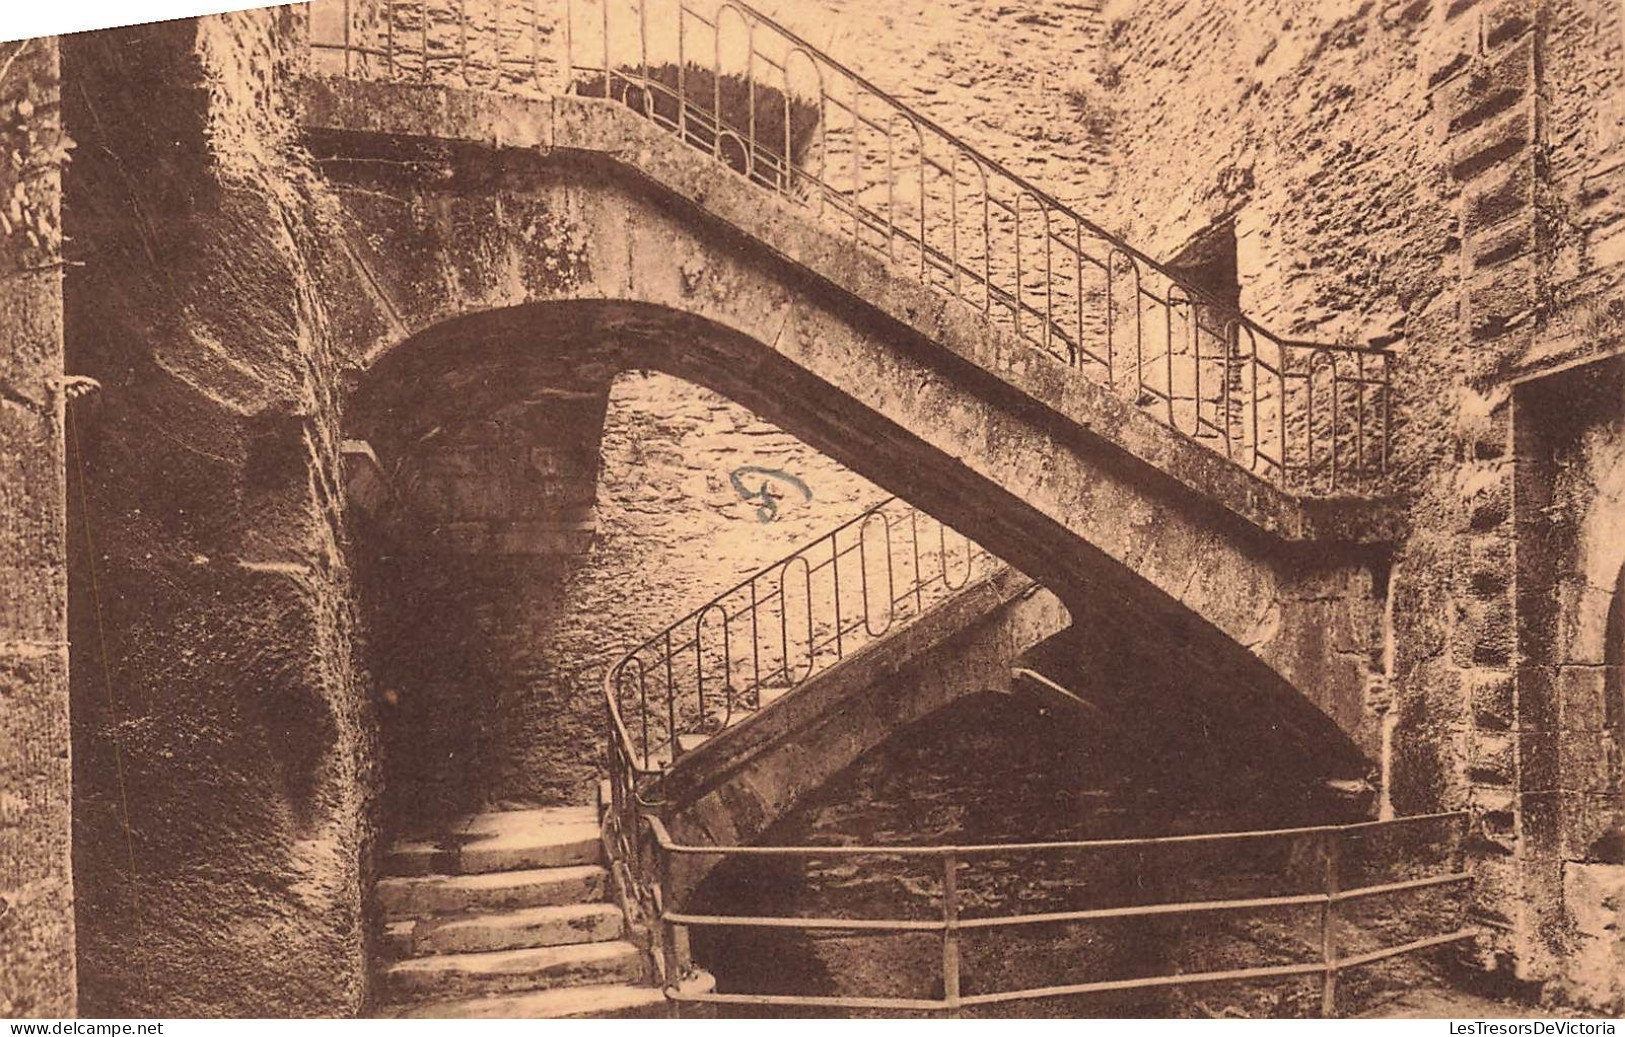 BELGIQUE - Bouillon - Vue à L'intérieure Du Château - Escalier Vauban (17me)  - Carte Postale Ancienne - Bouillon